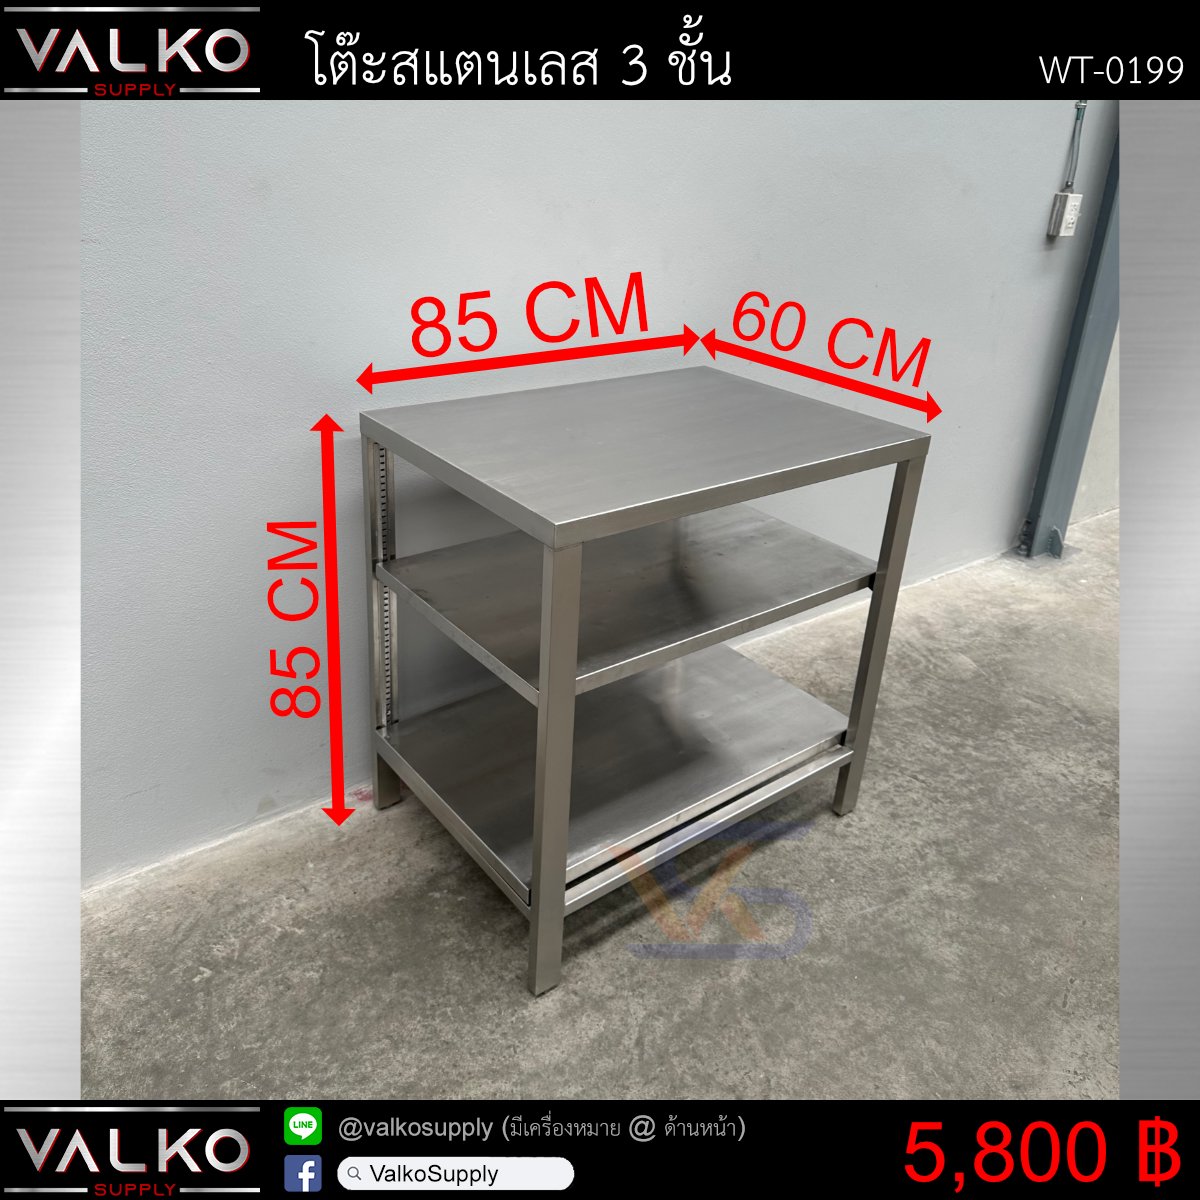 โต๊ะสแตนเลส 3 ชั้น 60x85x85 cm.